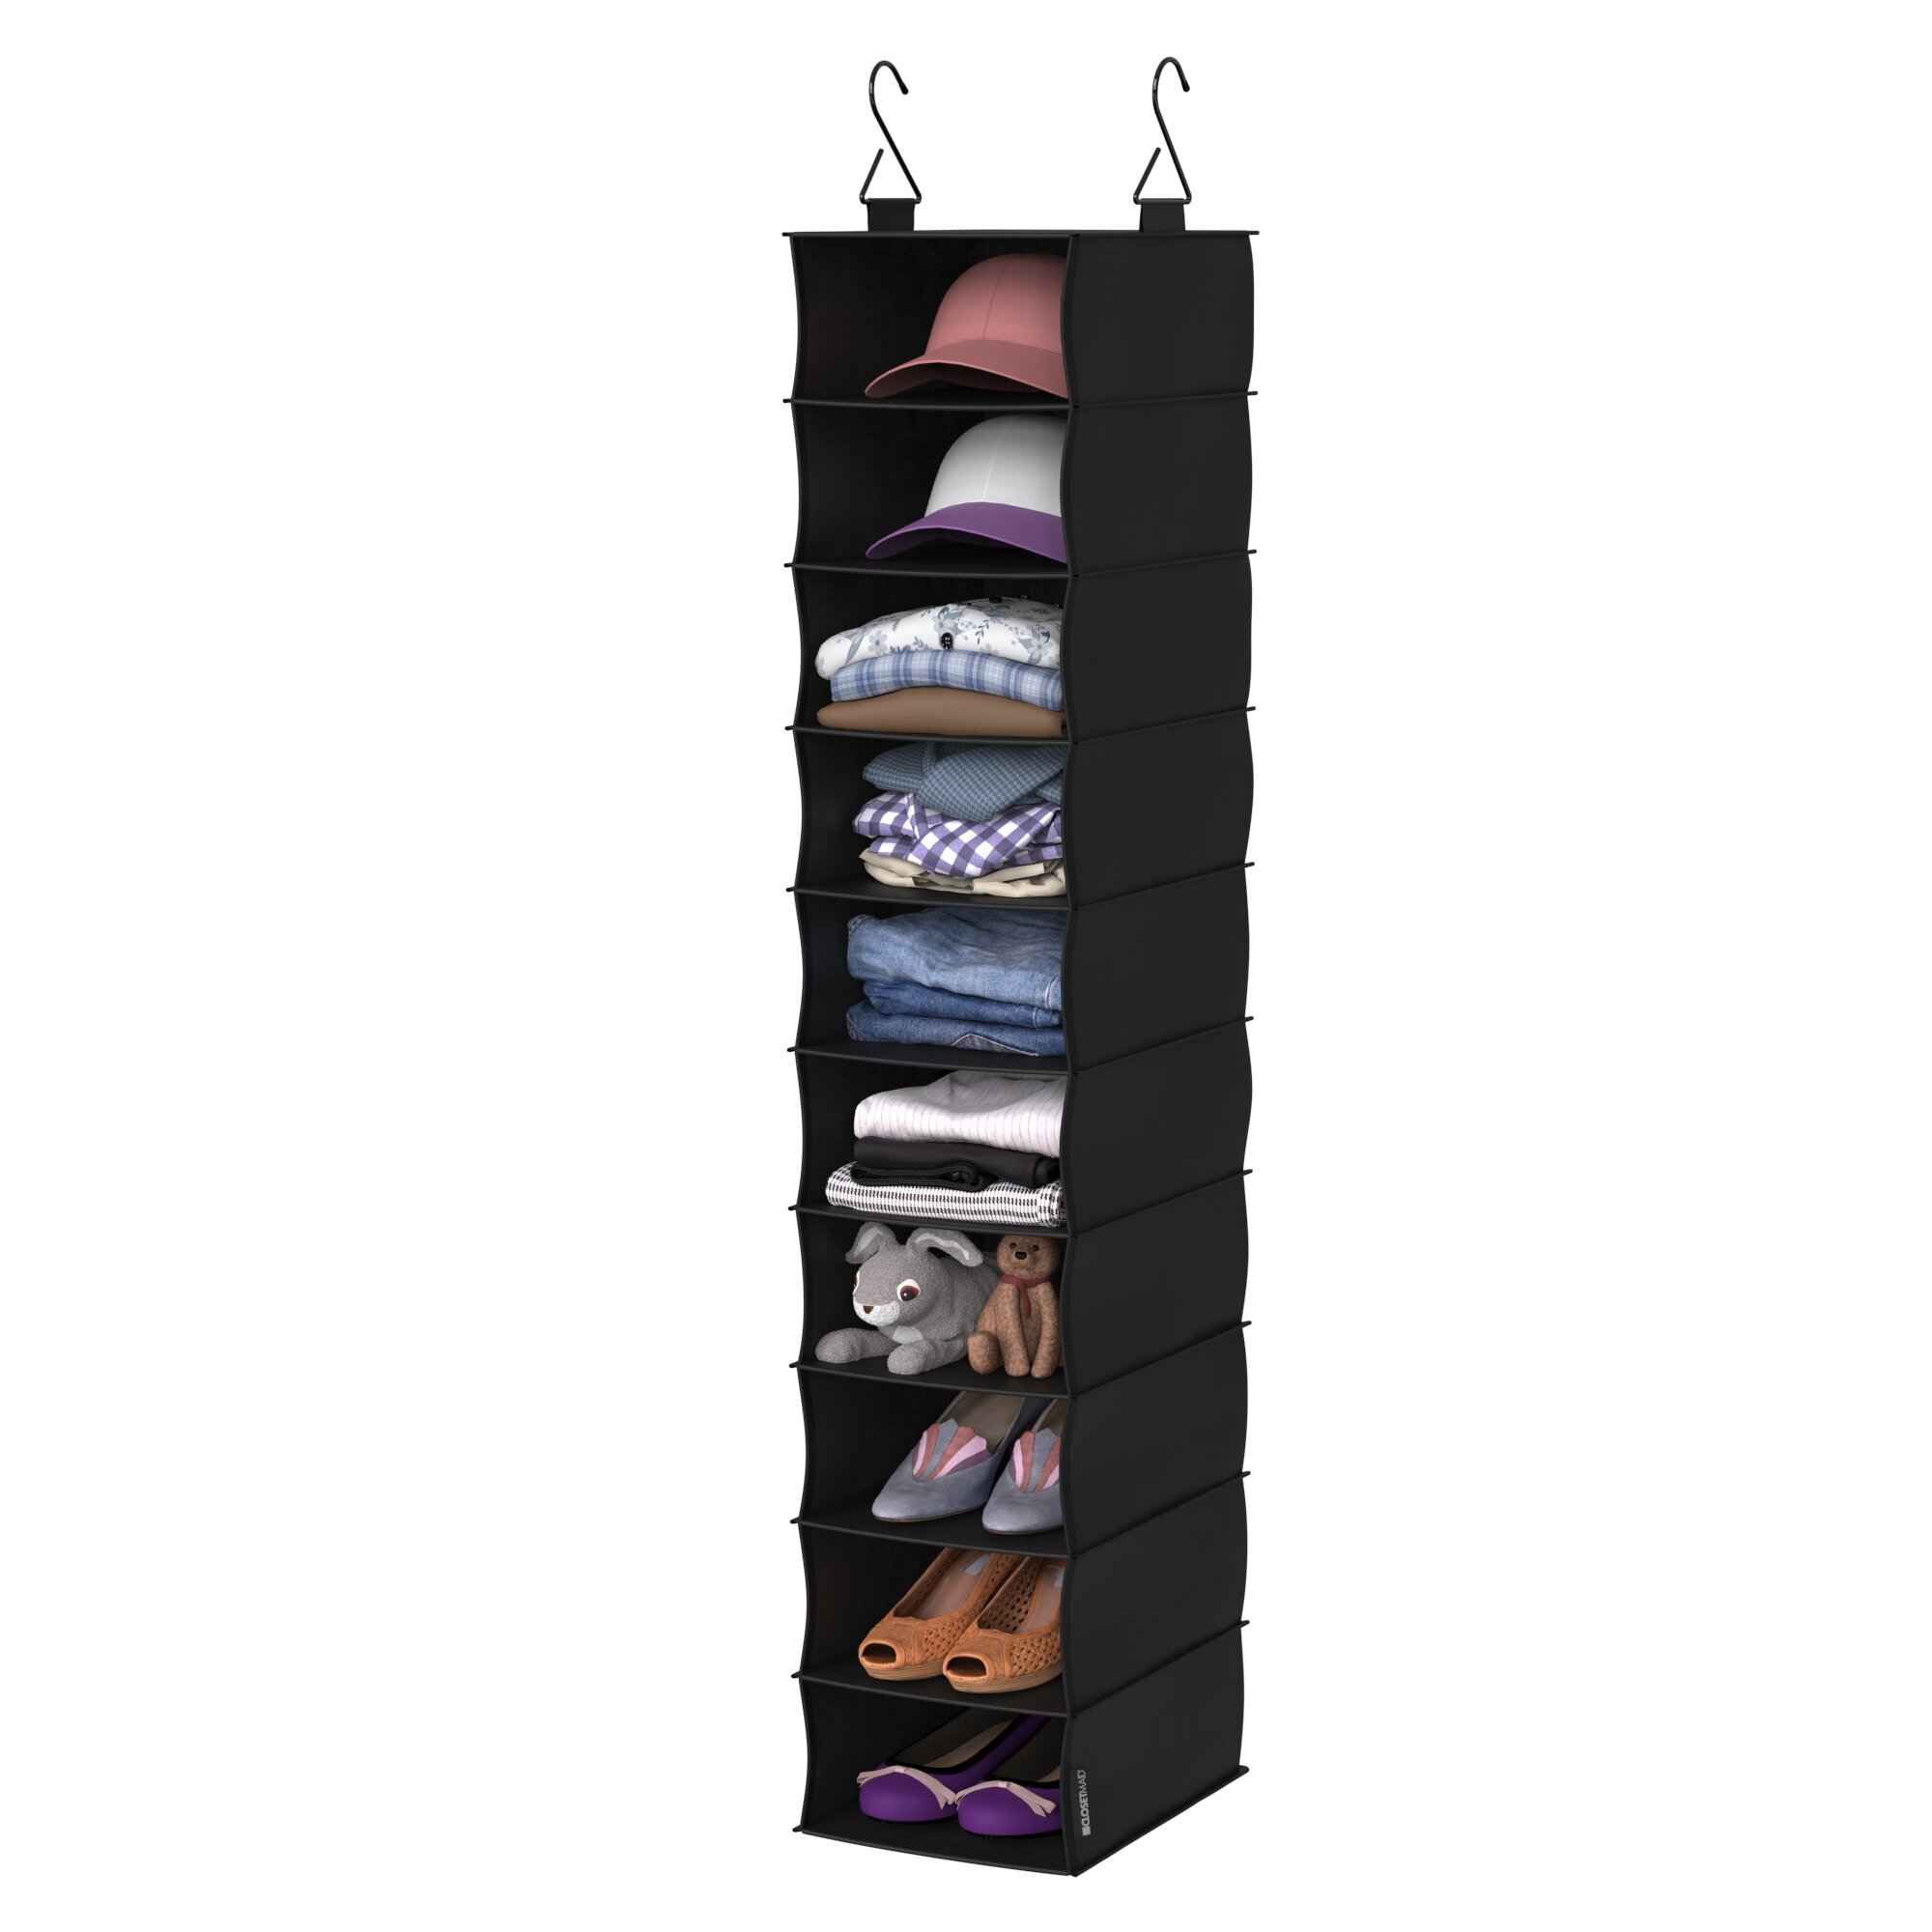 Hanging Closet Organizer, 10 Shelves Hanging Shoe Organizer for